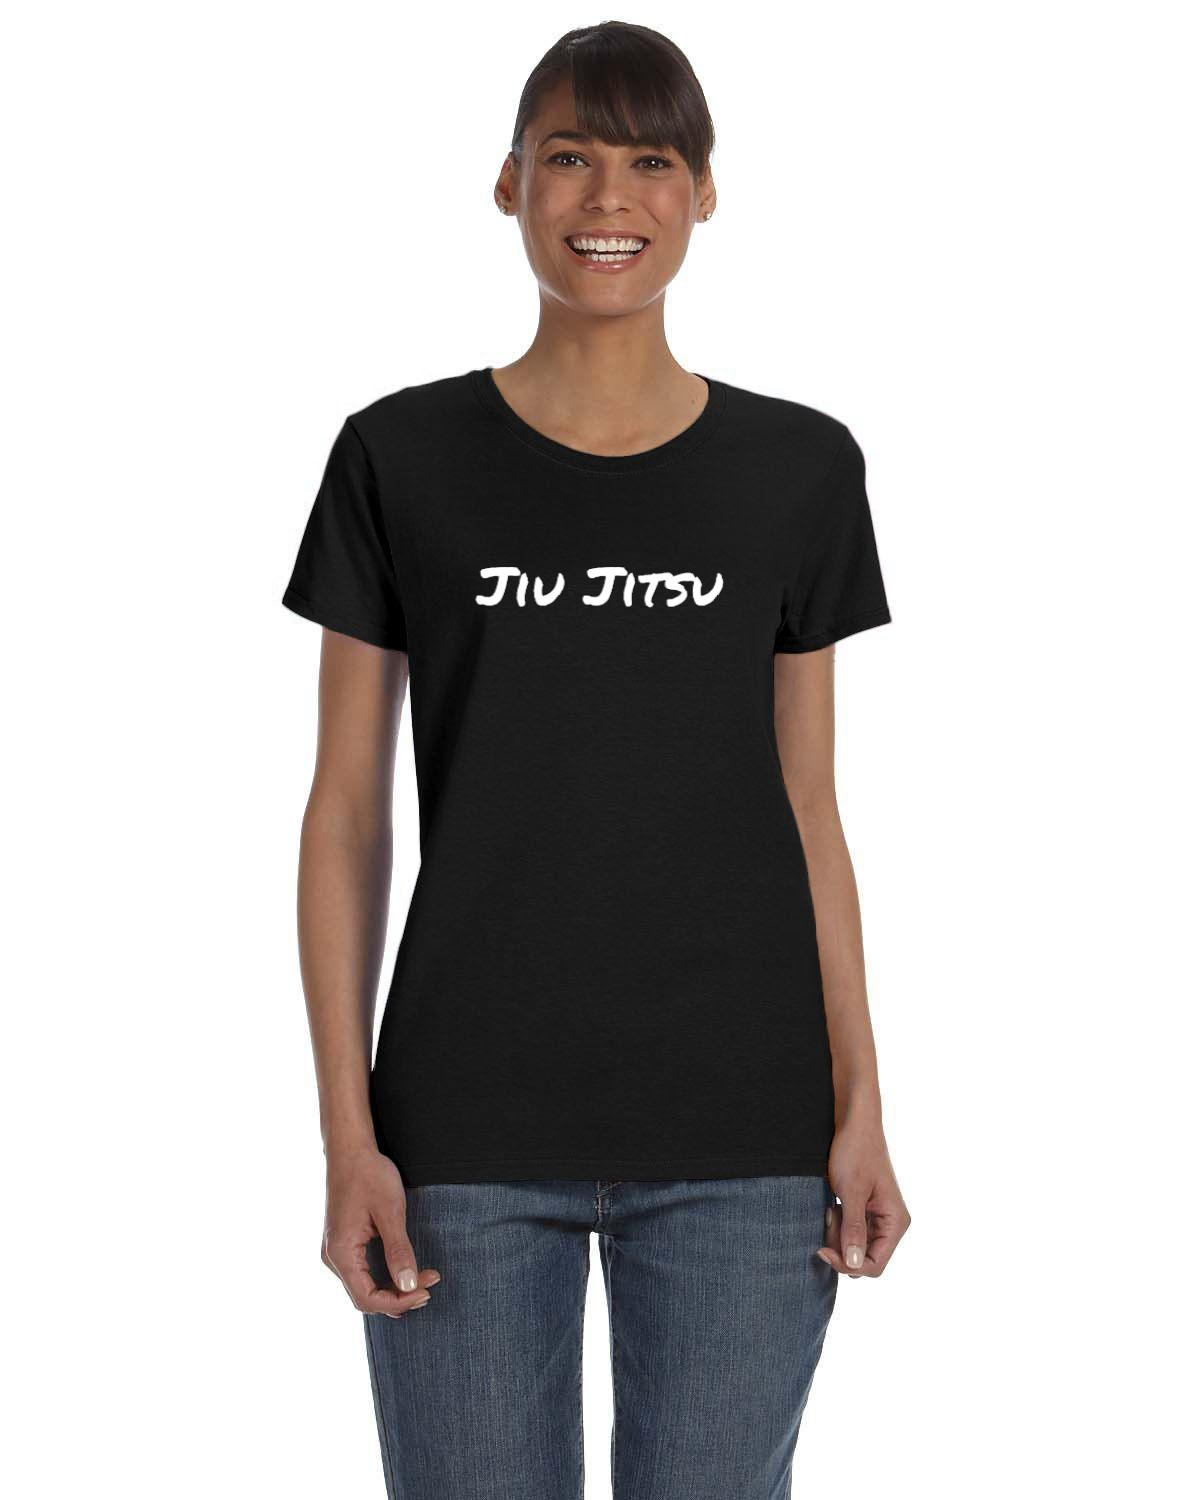 Jiu Jitsu Womens T-Shirt